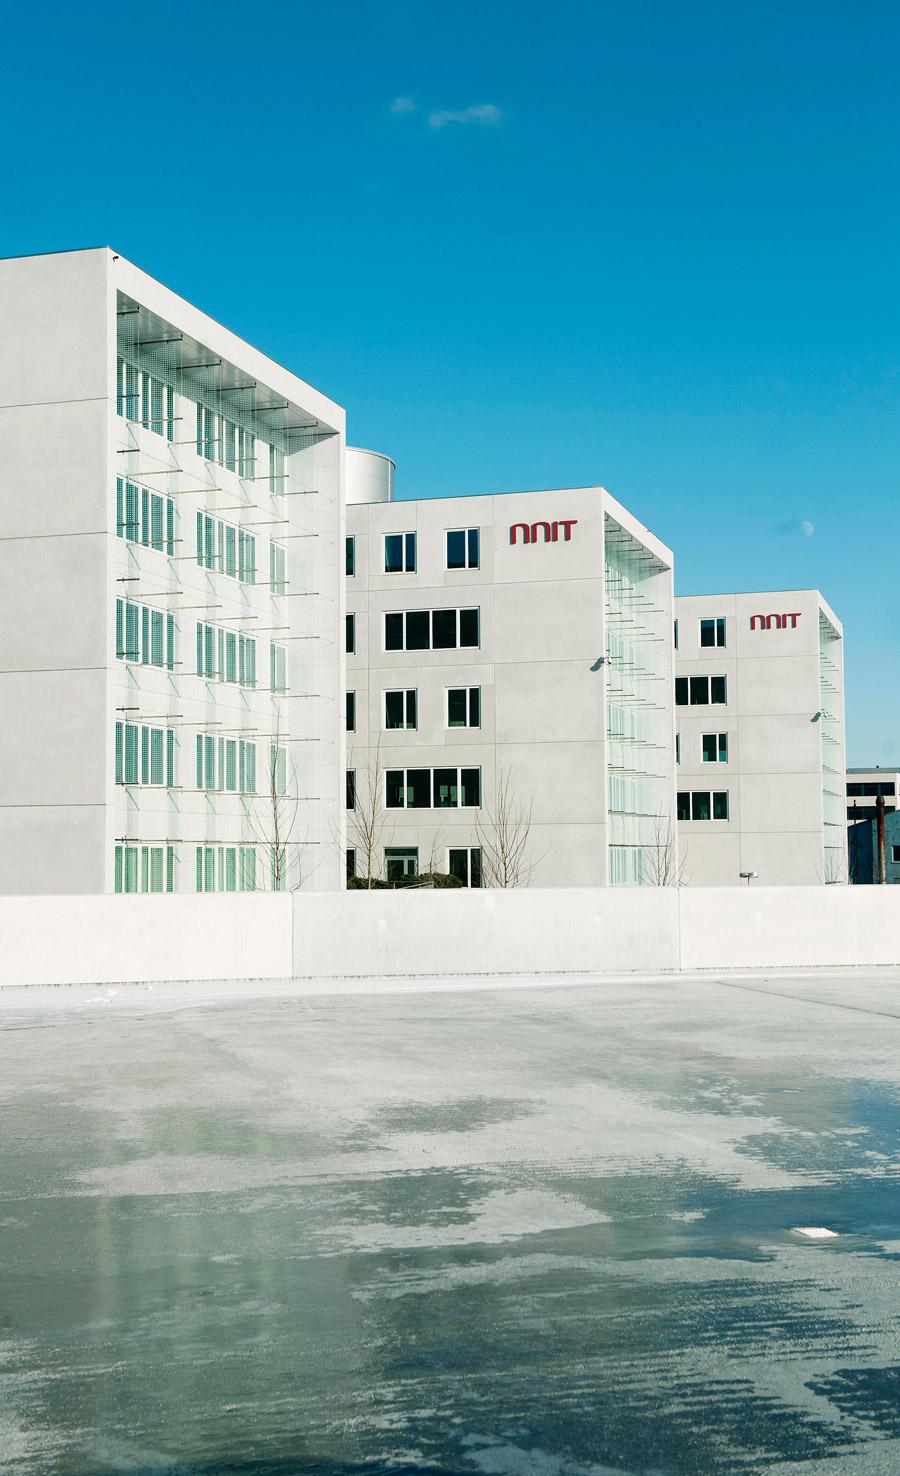 Kort fortalt NNIT er en af Danmarks fire største leverandører af it-services Fokusområder: It-rådgivning, udvikling, implementering og drift til life sciences, finanssektoren, det offentlige og andre